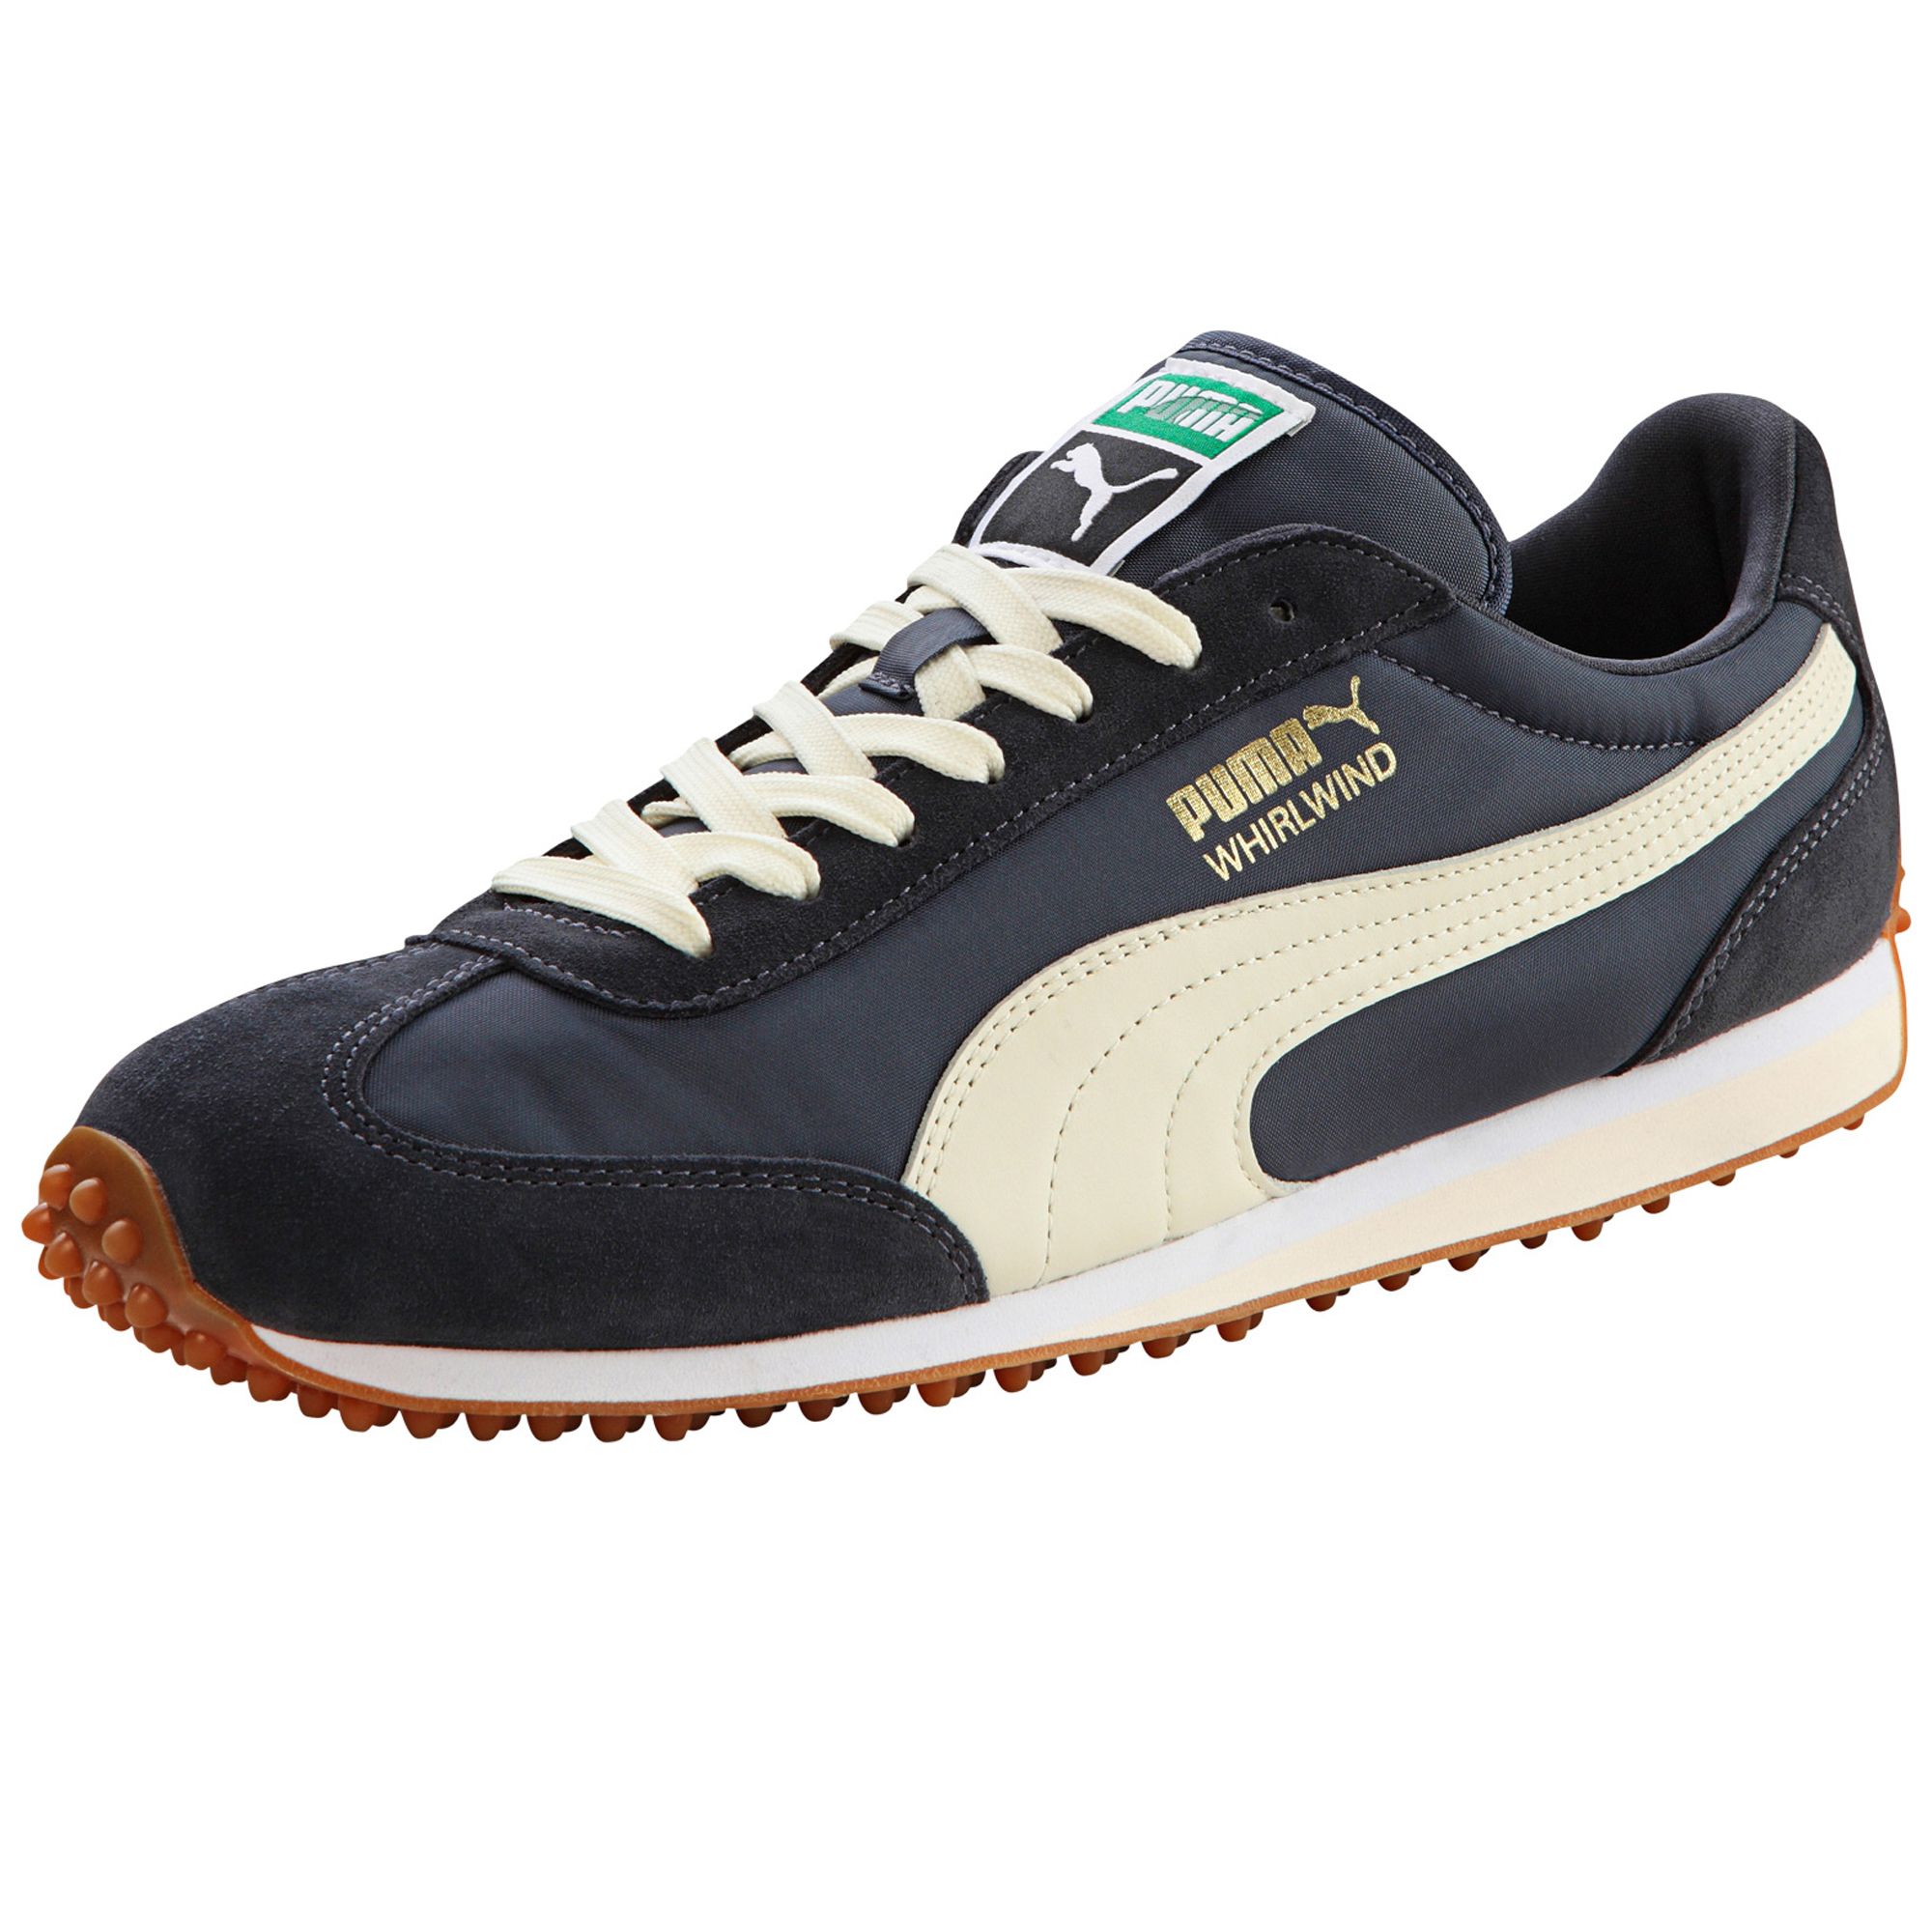 PUMA Whirlwind Classic Footwear Sneakers Sport Shoe Men New | eBay